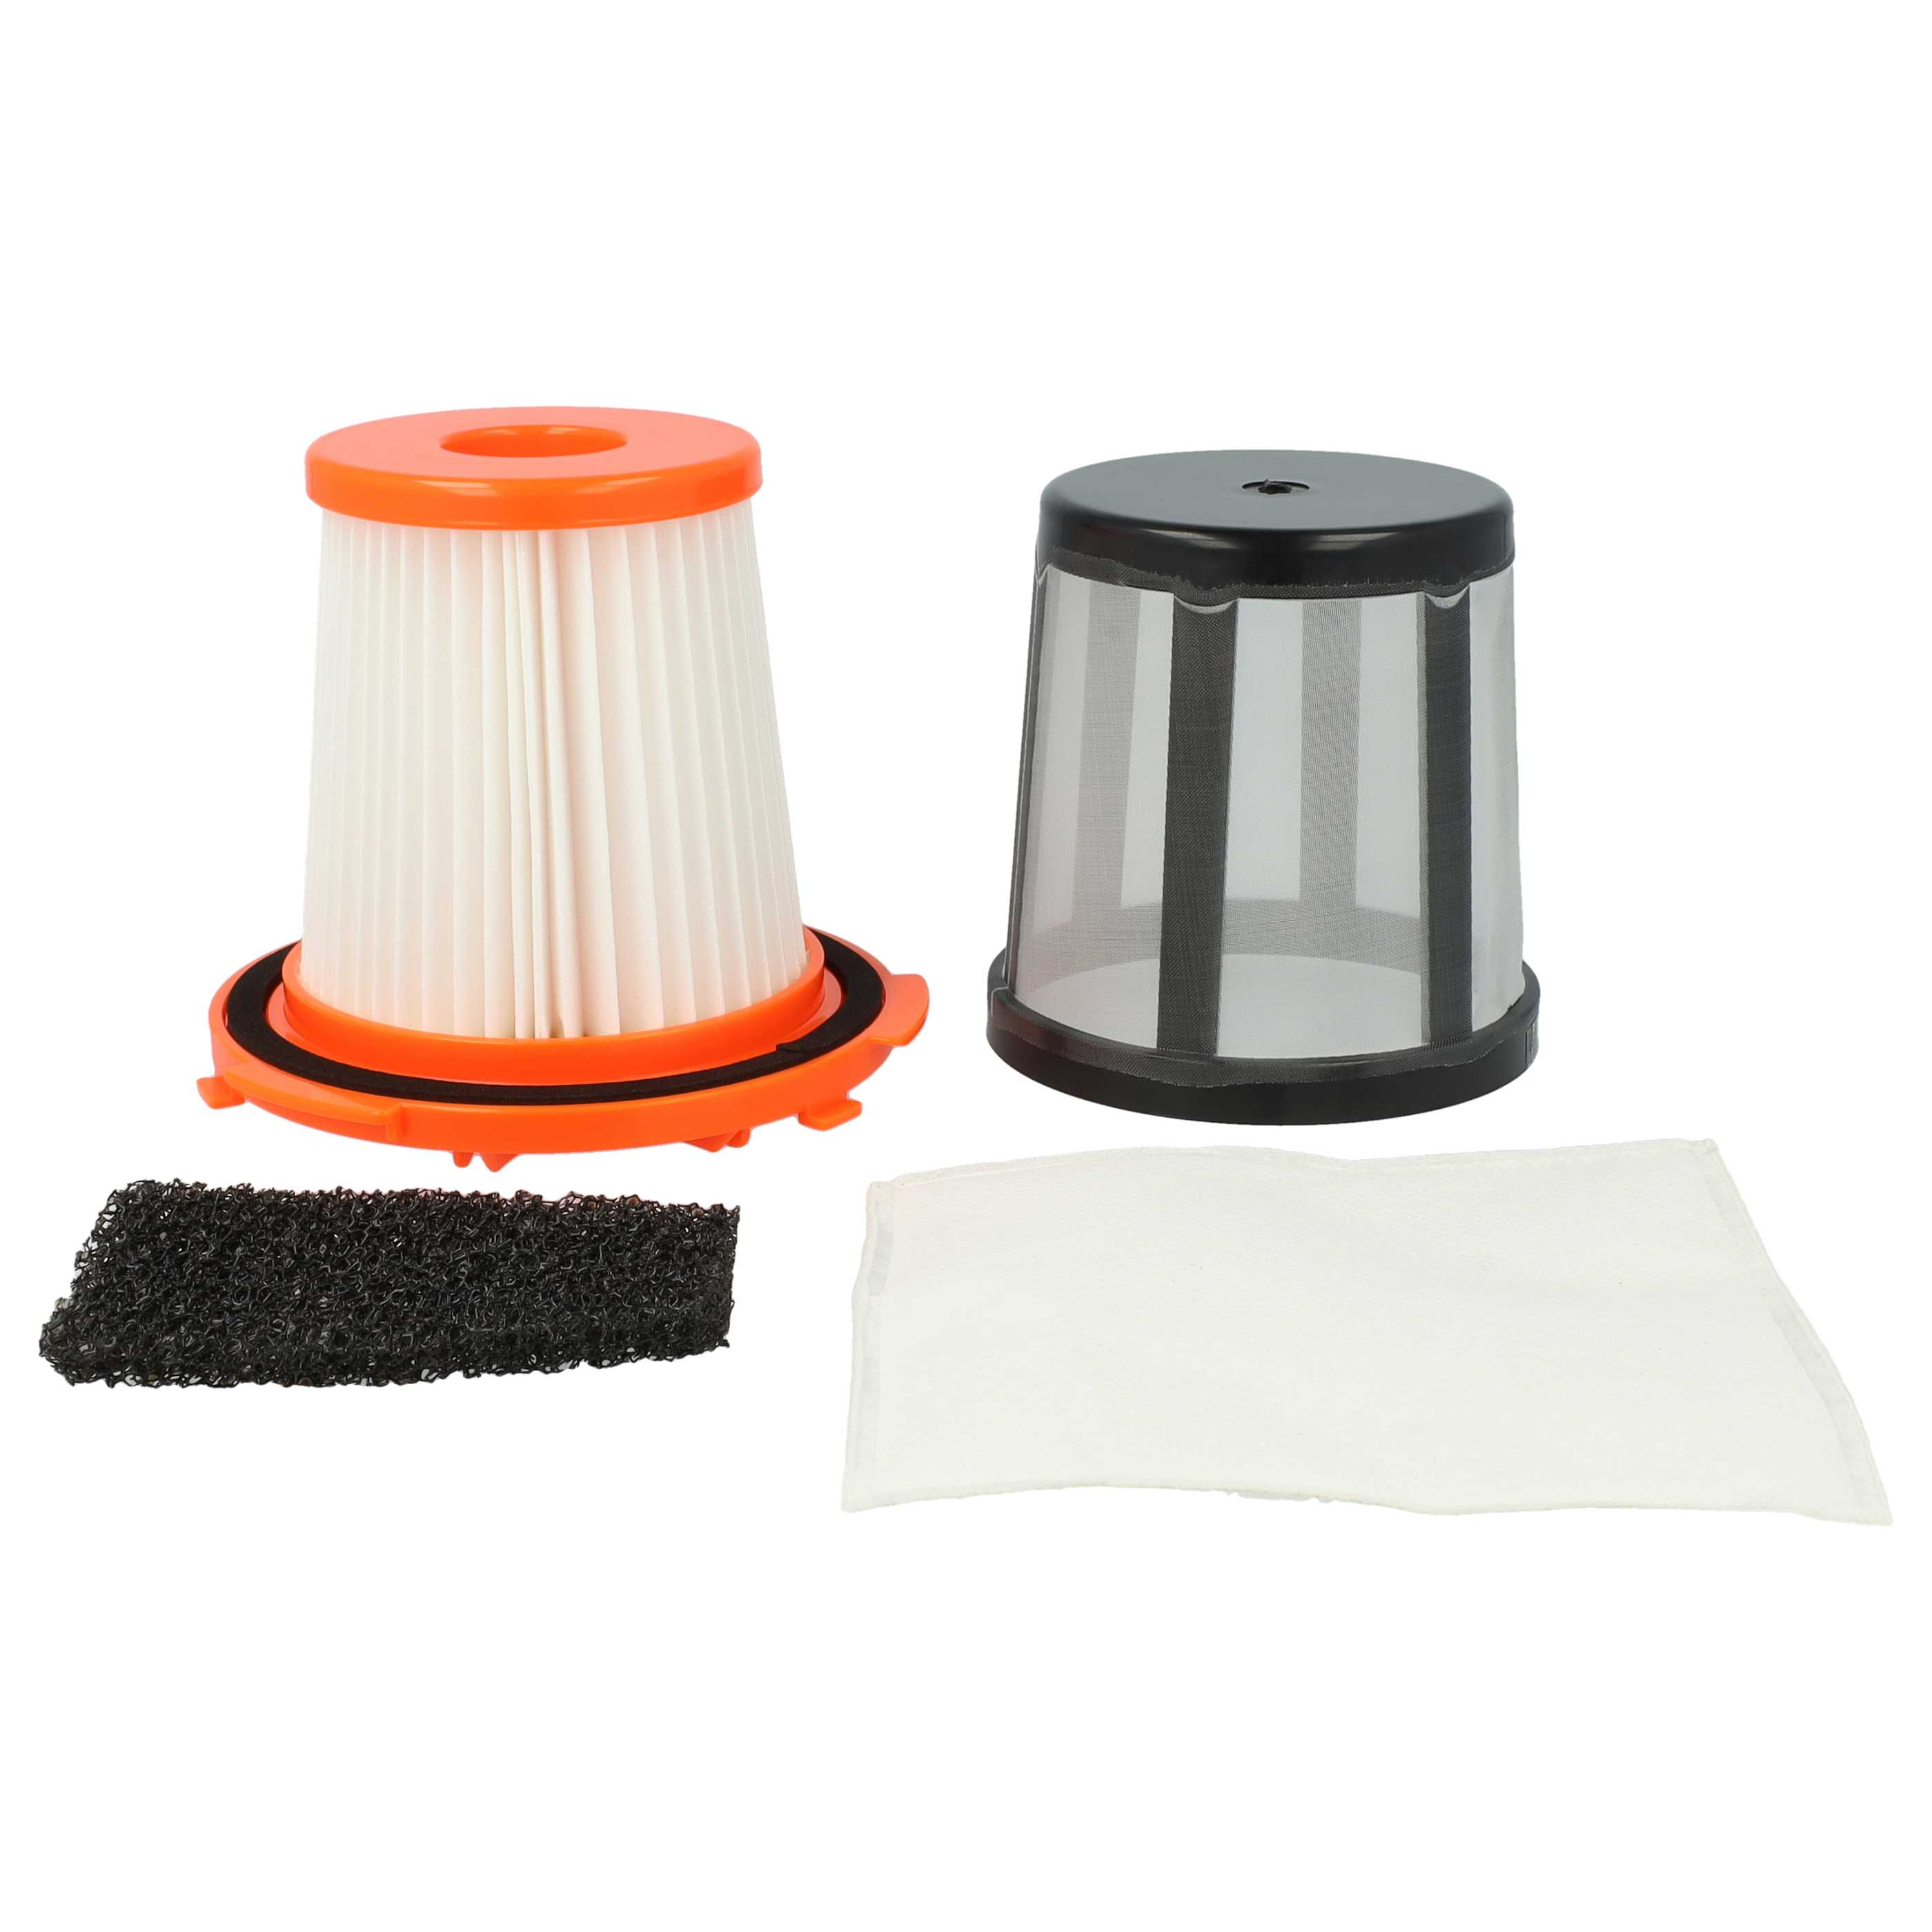 3x Filtro sostituisce AEG/Electrolux 9001969873, 4071387353 per aspirapolvere, nero / arancione / bianco